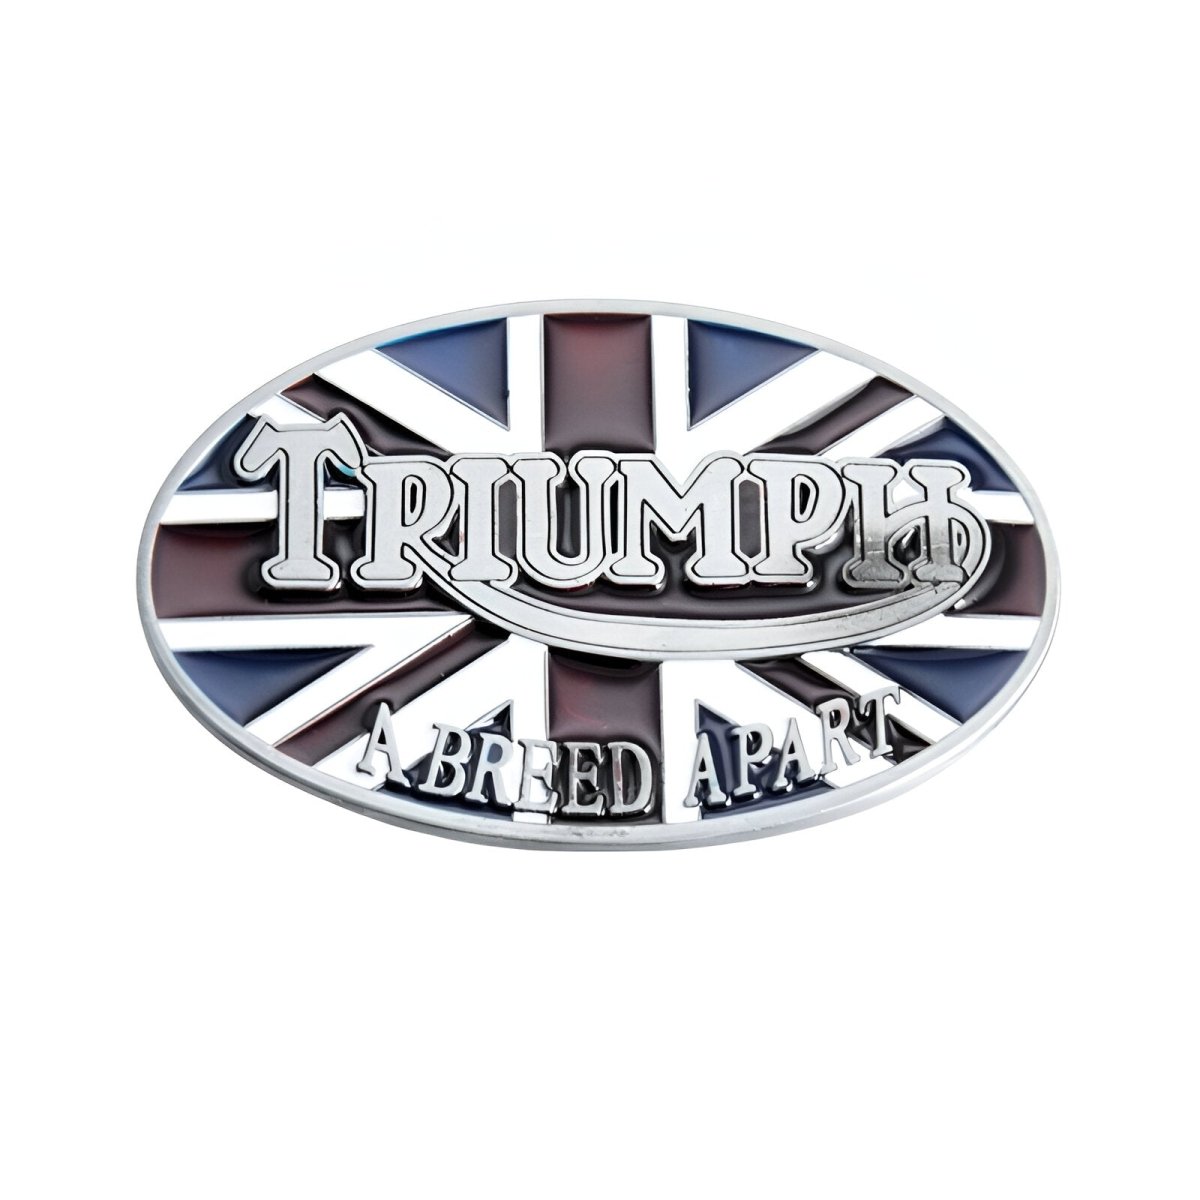 Boucle de ceinture Moto, "Triumph" A Breed Apart, modèle Kenneth - La Boutique de la Ceinture